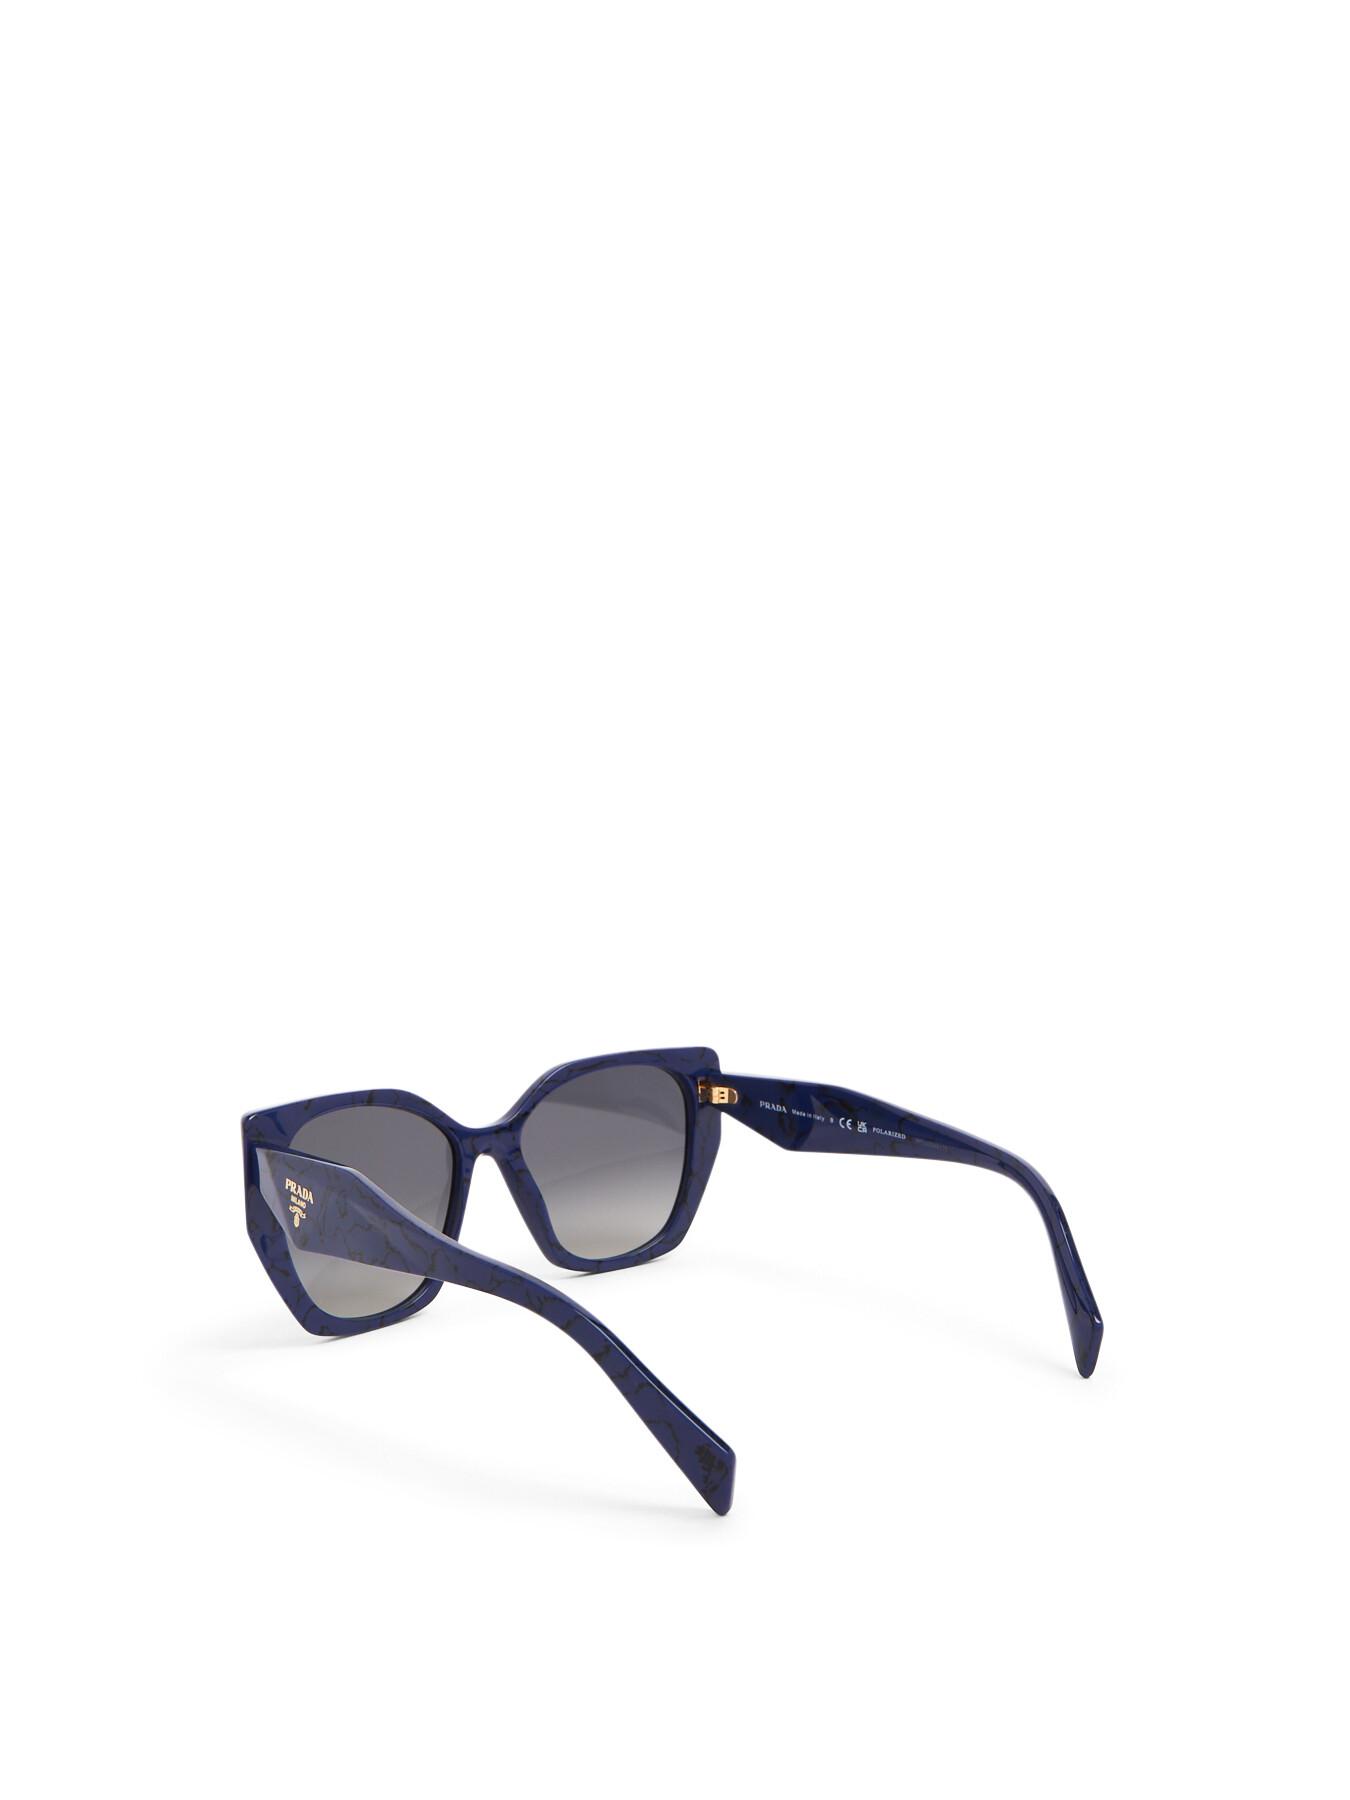 Prada Women's Hexagonal Acetate Polarised Sunglasses in Blue | Lyst UK